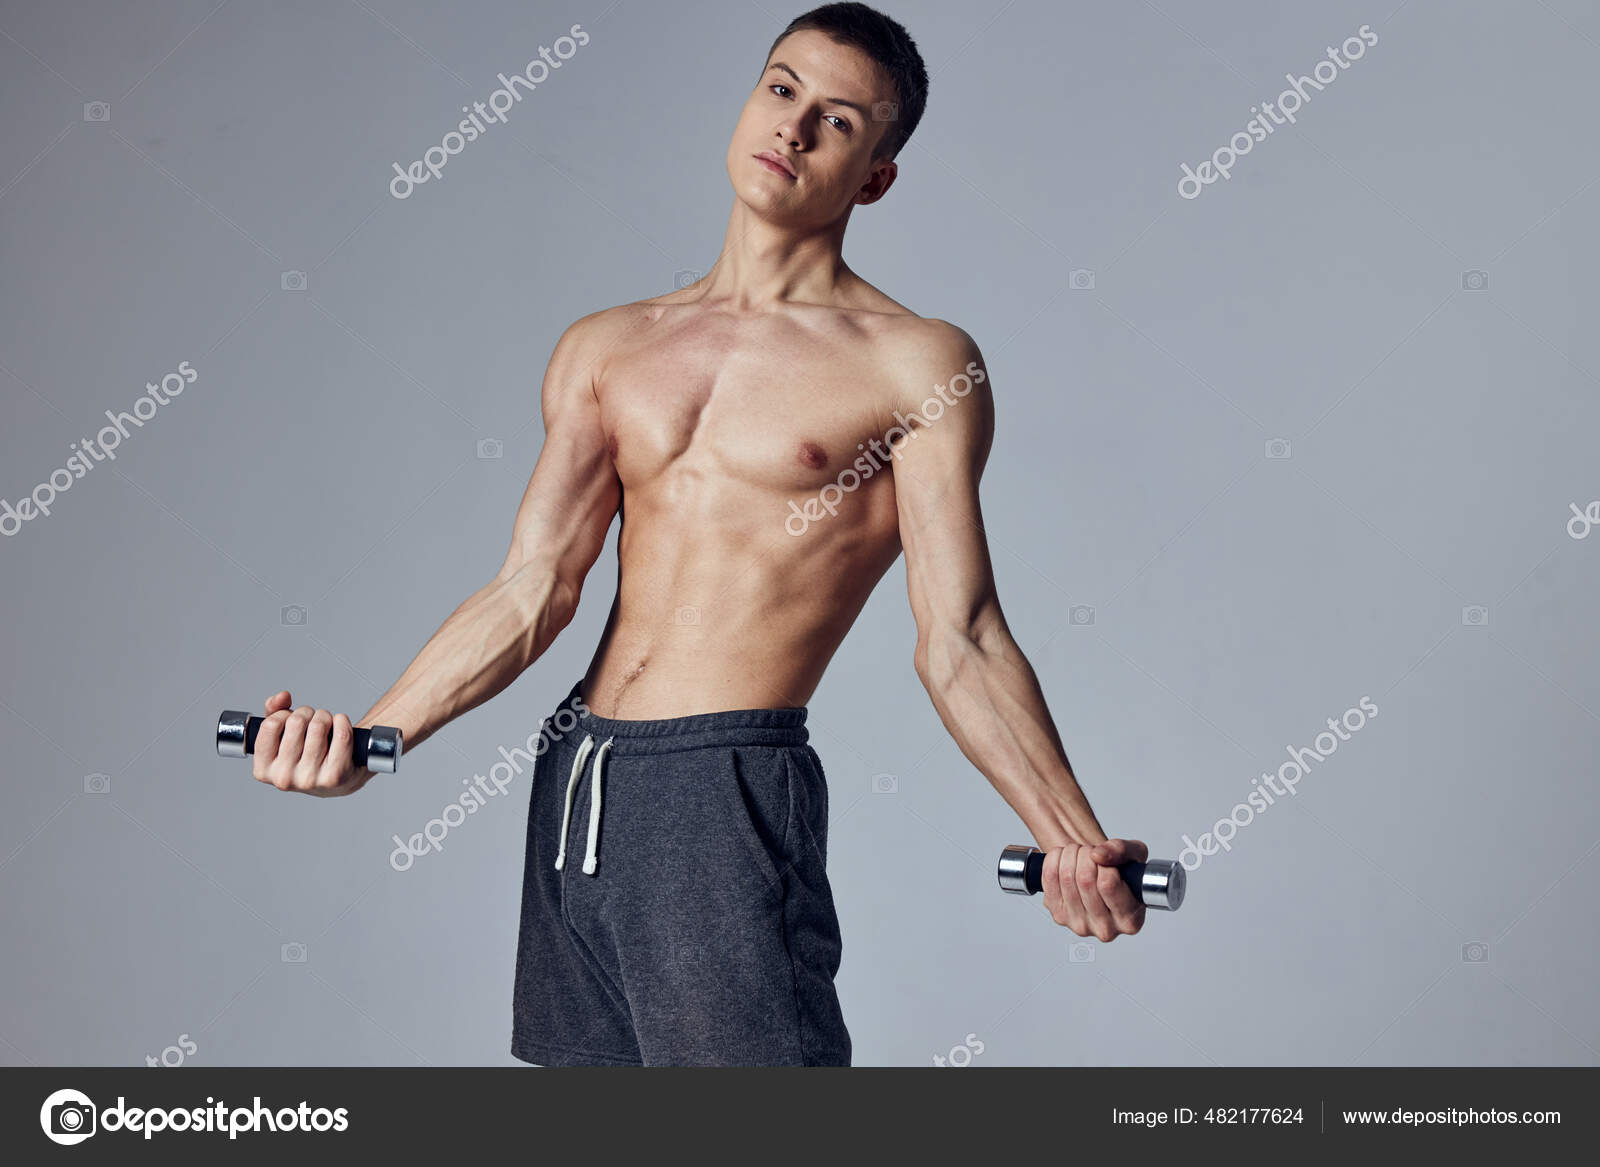 Schöner Mann athletischer Körperbau Hanteln in der Hand Workout -  Stockfotografie: lizenzfreie Fotos © ShotStudio 482177624 | Depositphotos